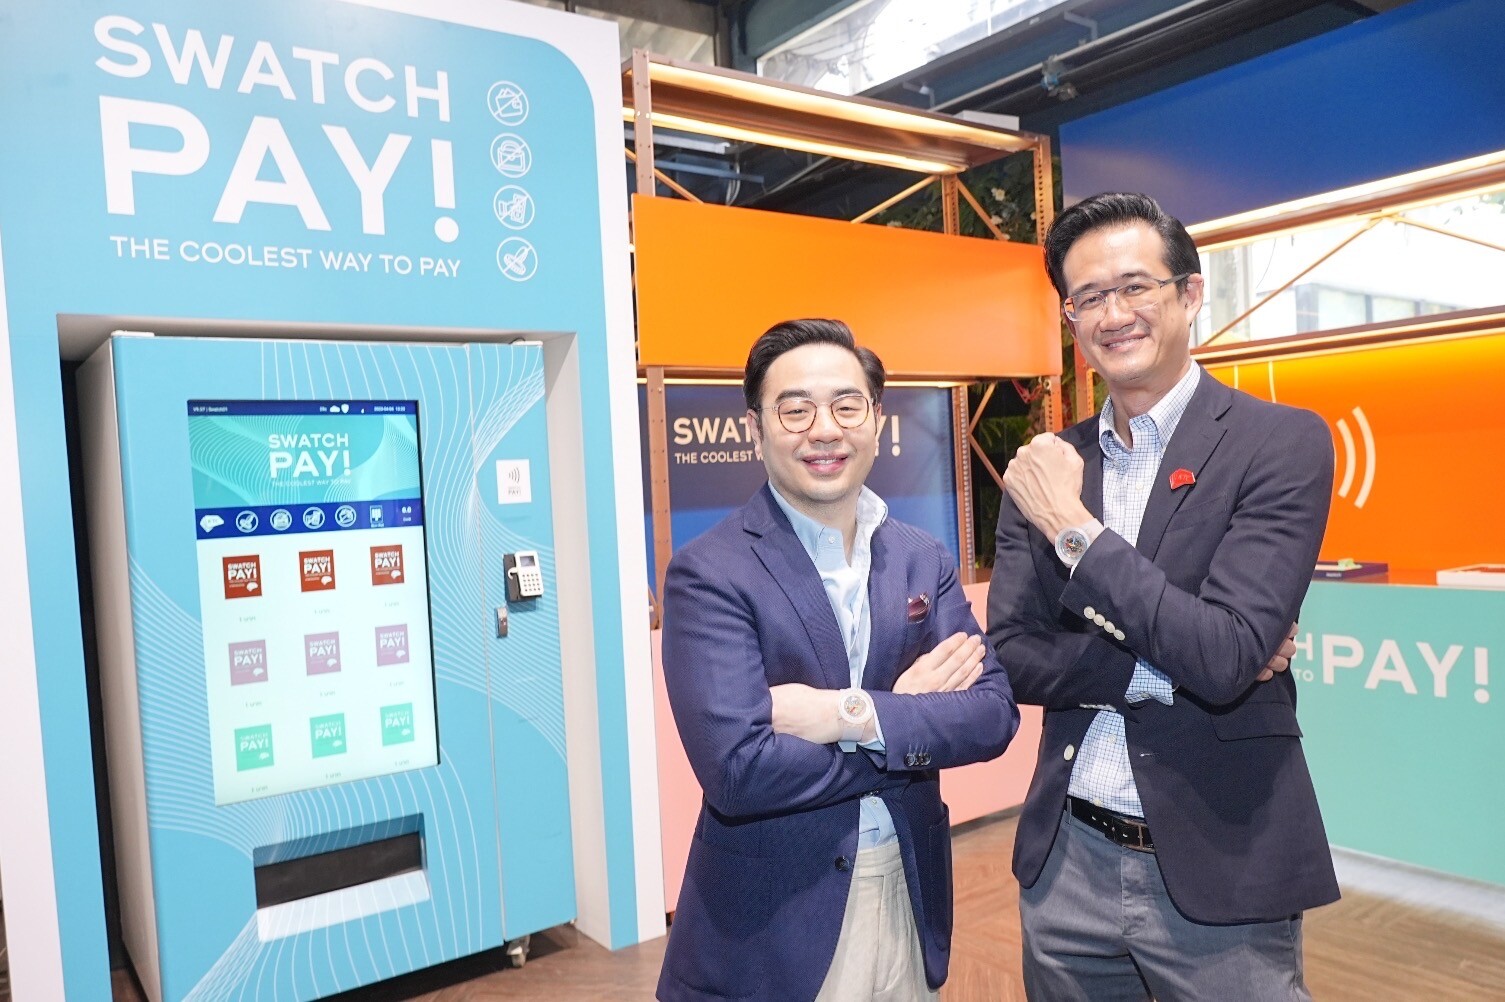 เคทีซีจับมือสวอท์ชเปิดตัว SwatchPAY! ครั้งแรกในเอเชีย ทางเลือกใหม่ของการแตะจ่าย ตอกย้ำจุดยืนผู้นำด้าน Device Pay